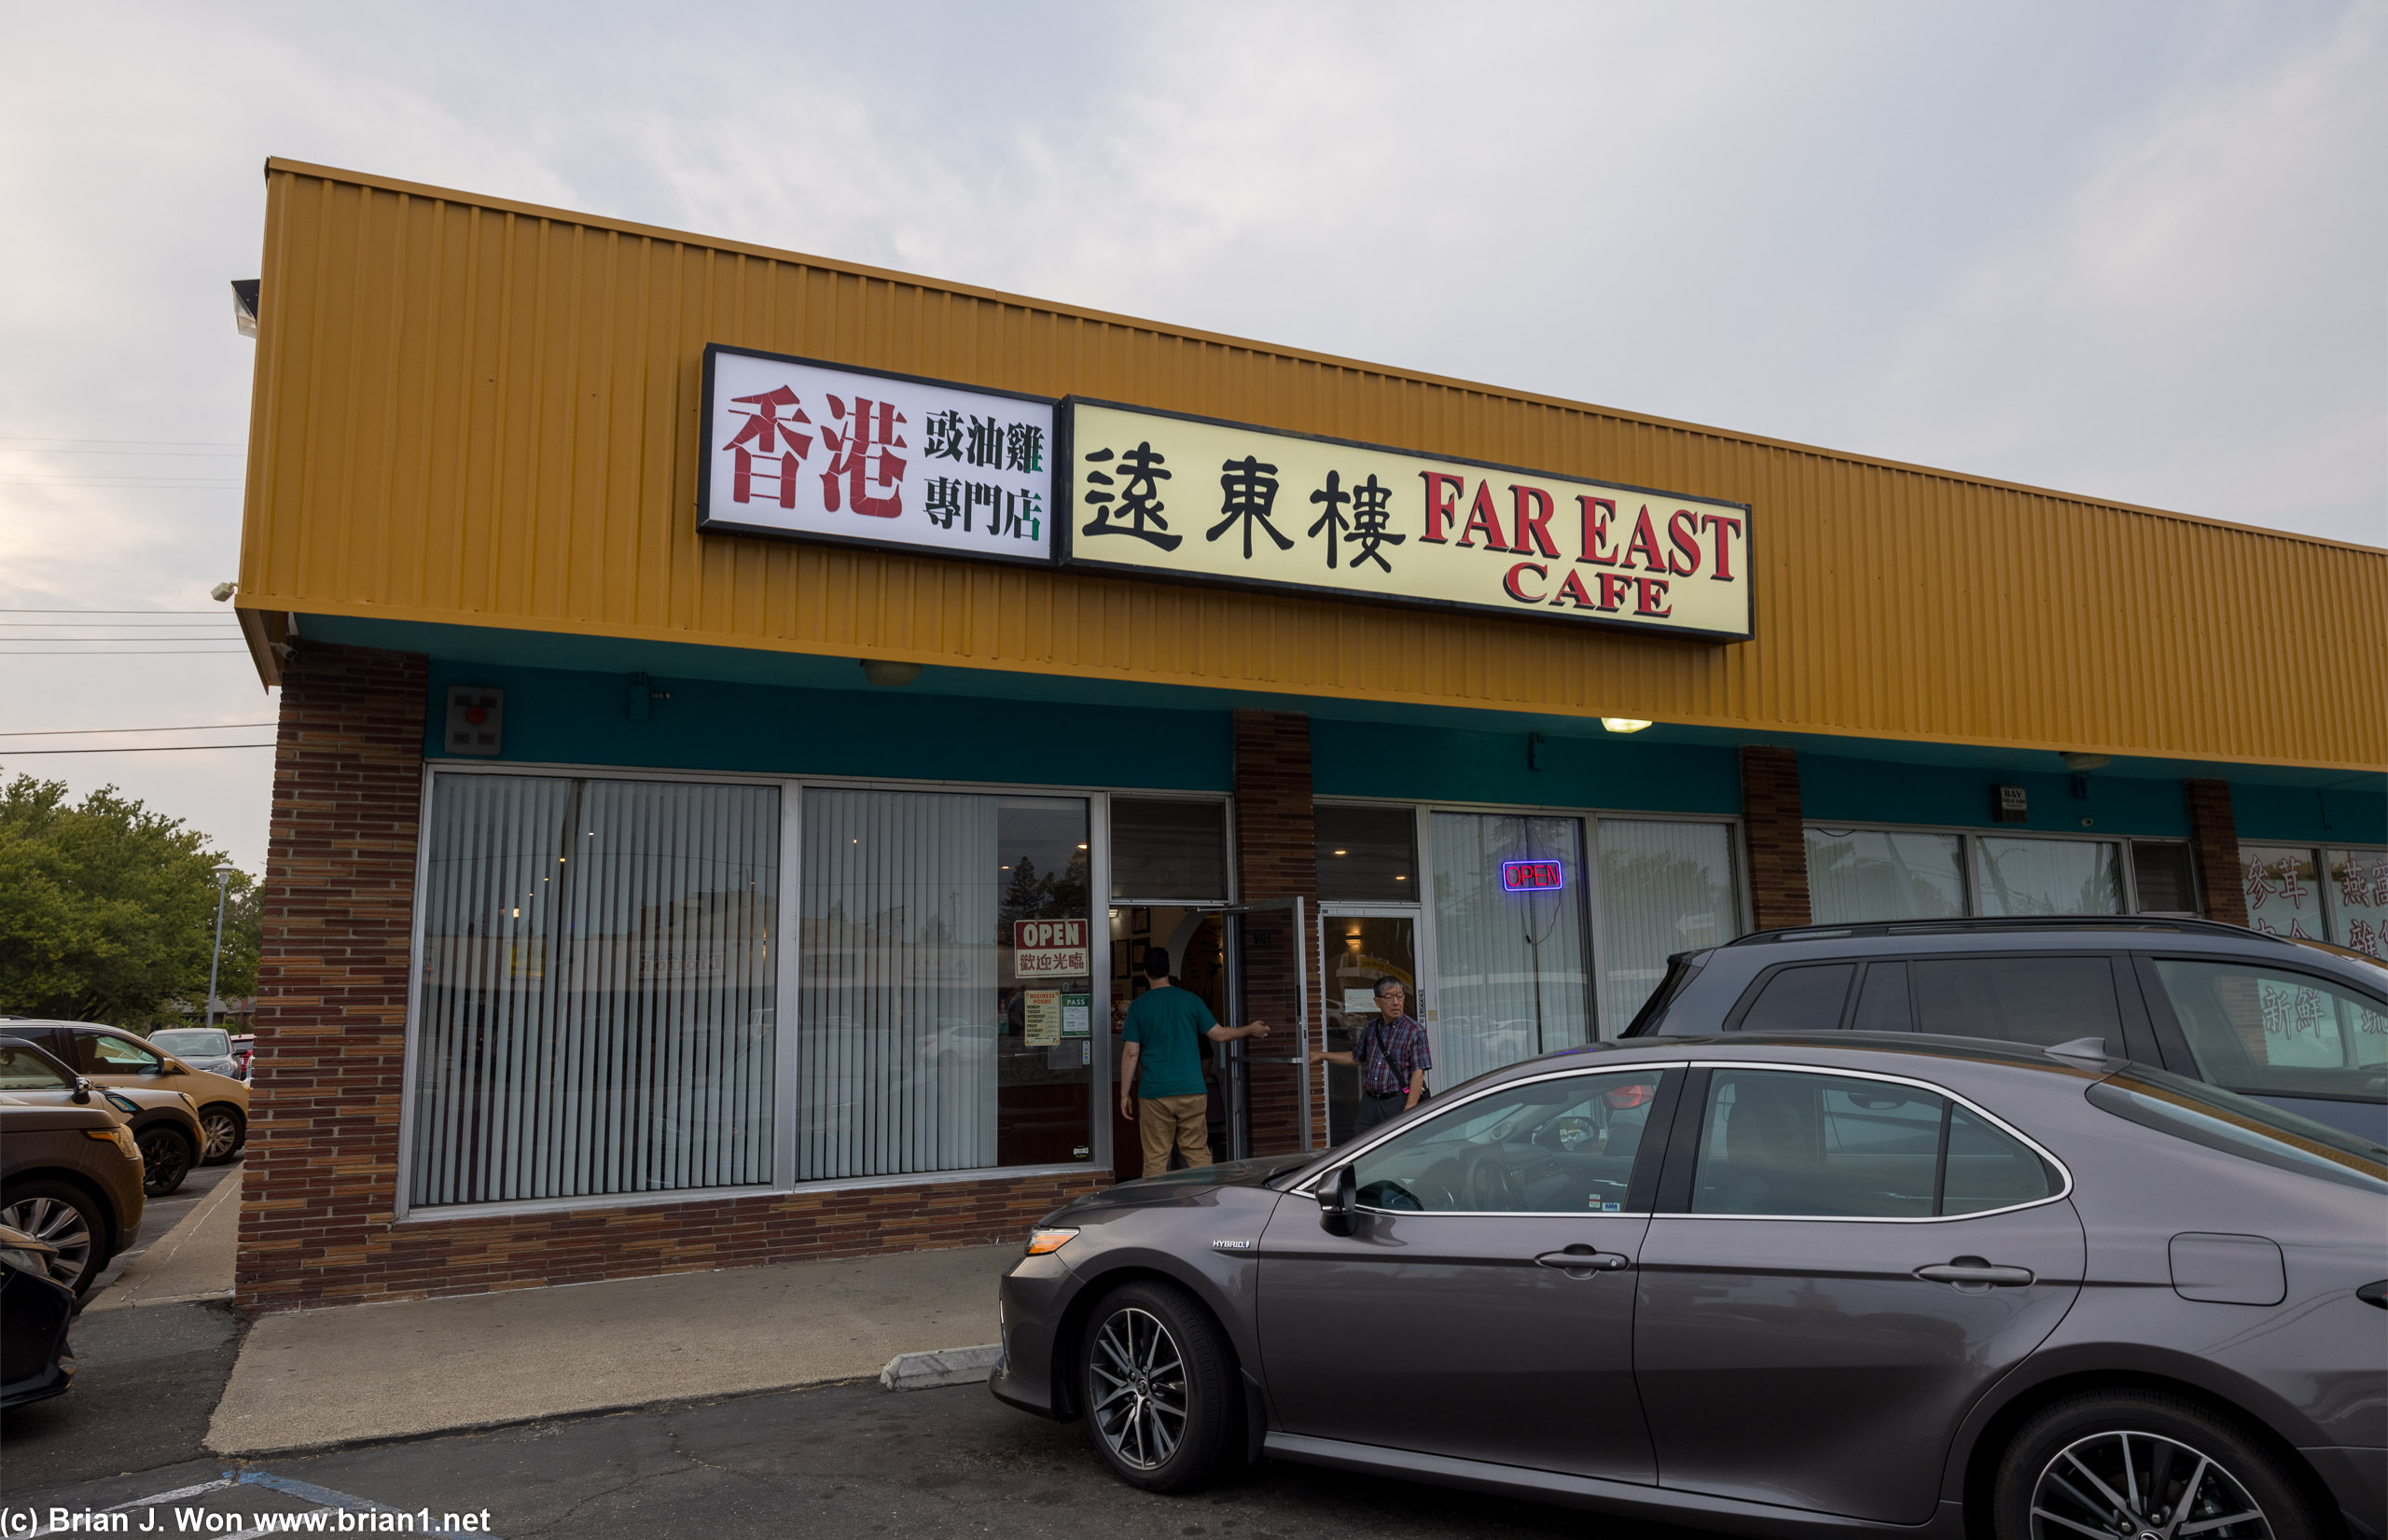 Good 'ol Far East Cafe.